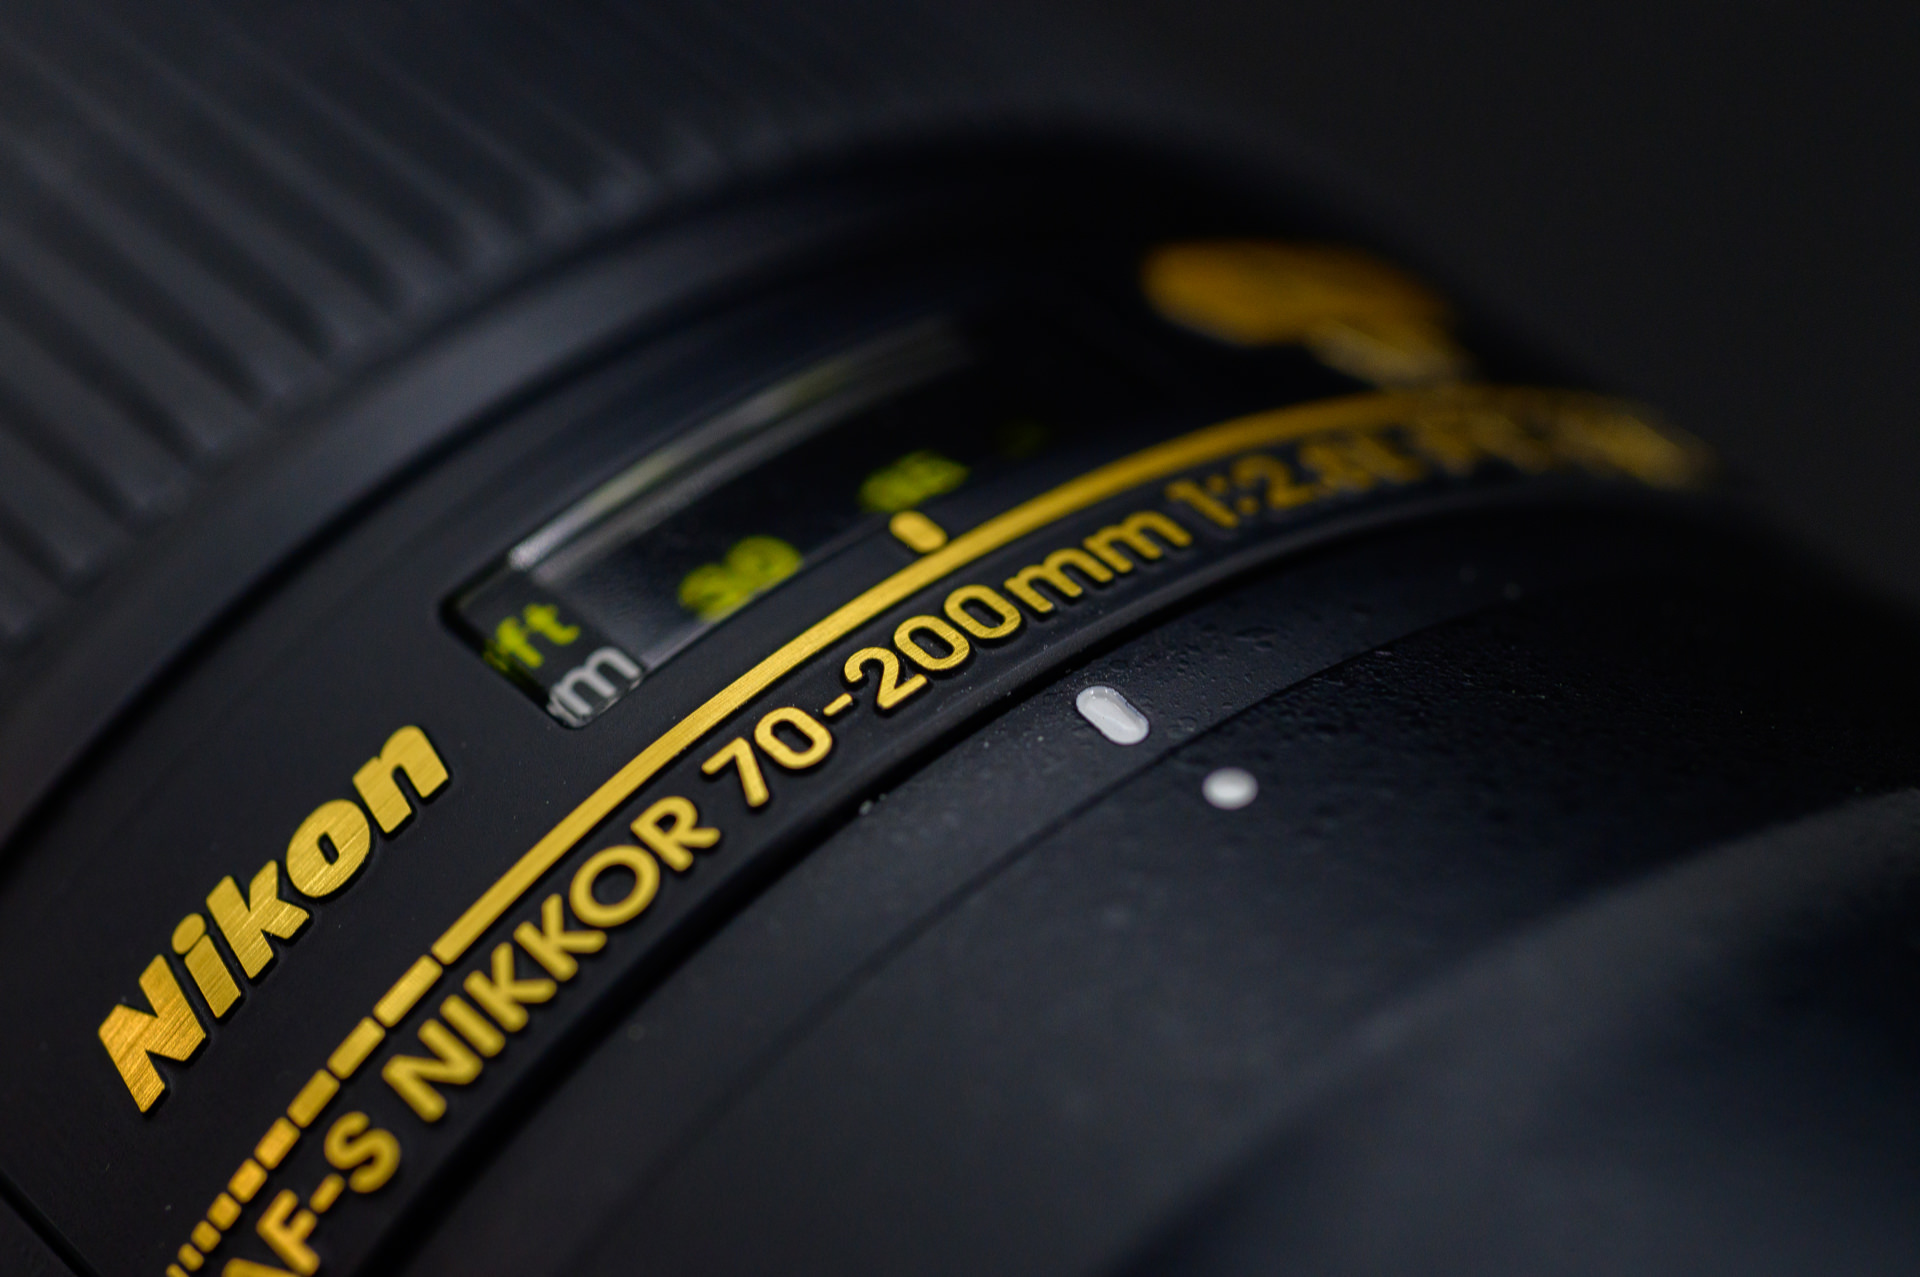 Nikon Z6に Ai AF Micro-Nikkor 60mm f/2.8Dを装着してみたので 